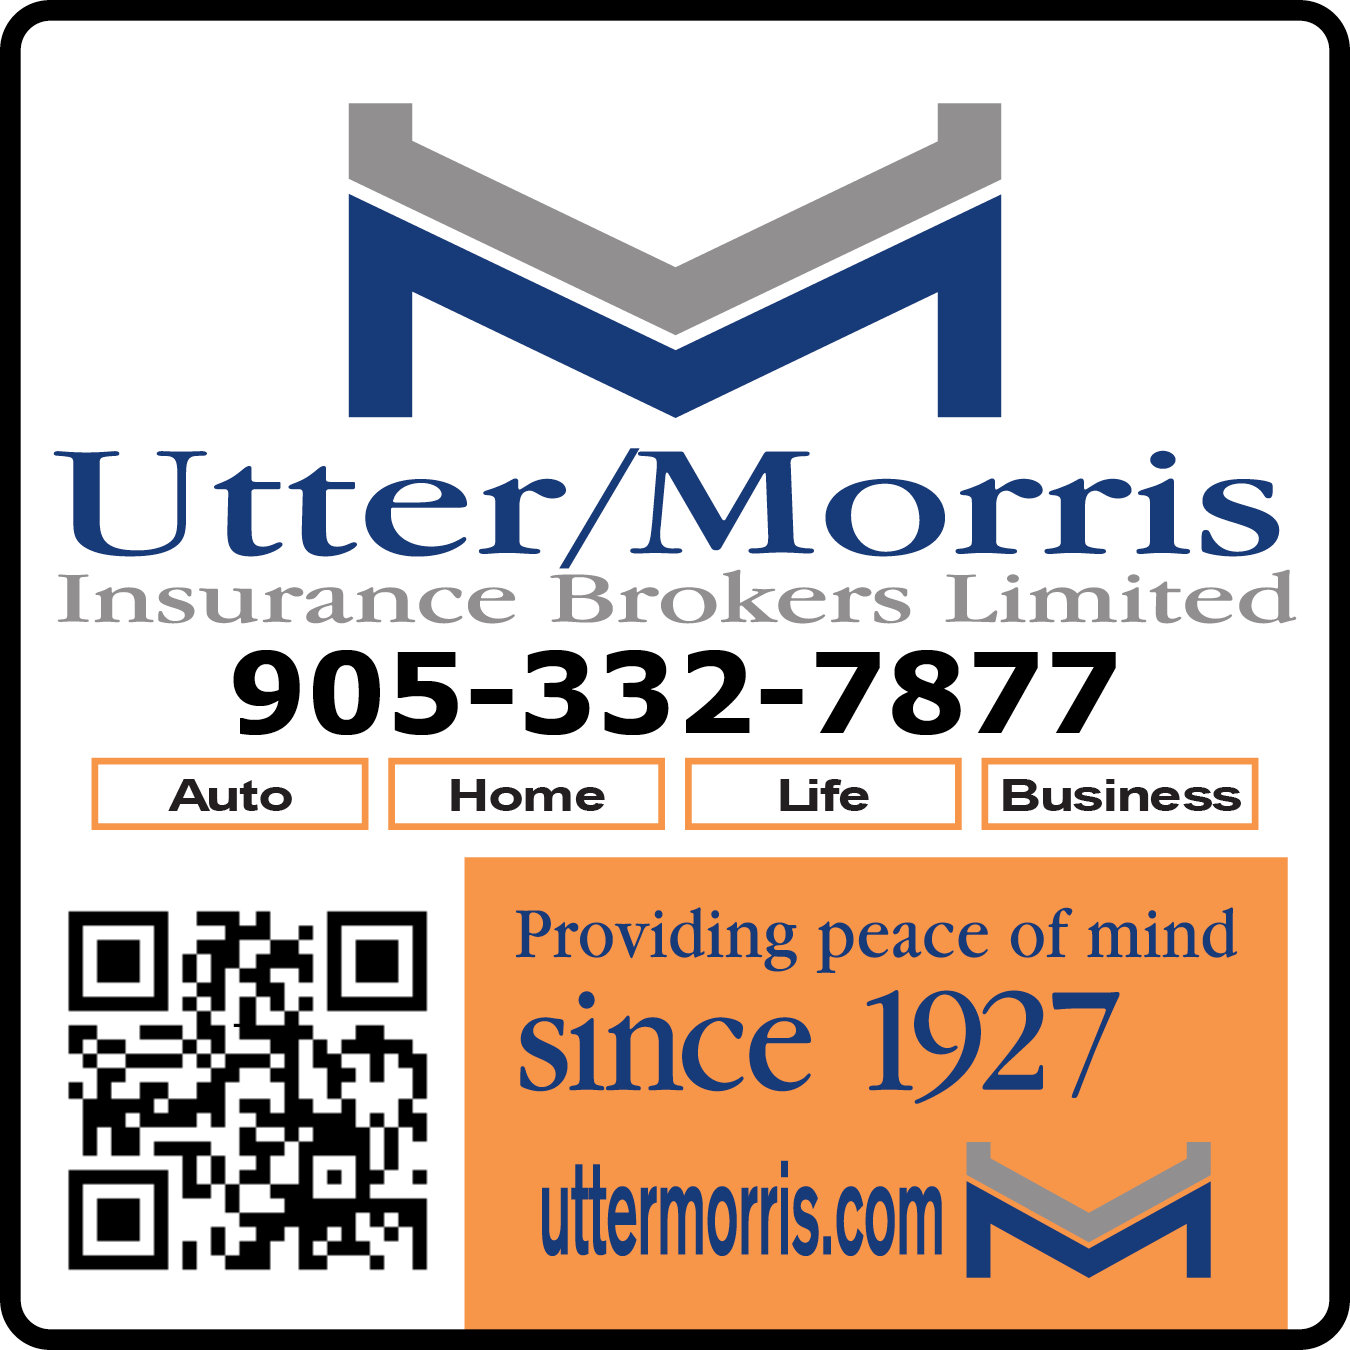 Utter-Morris Insurance Brokers Ltd.